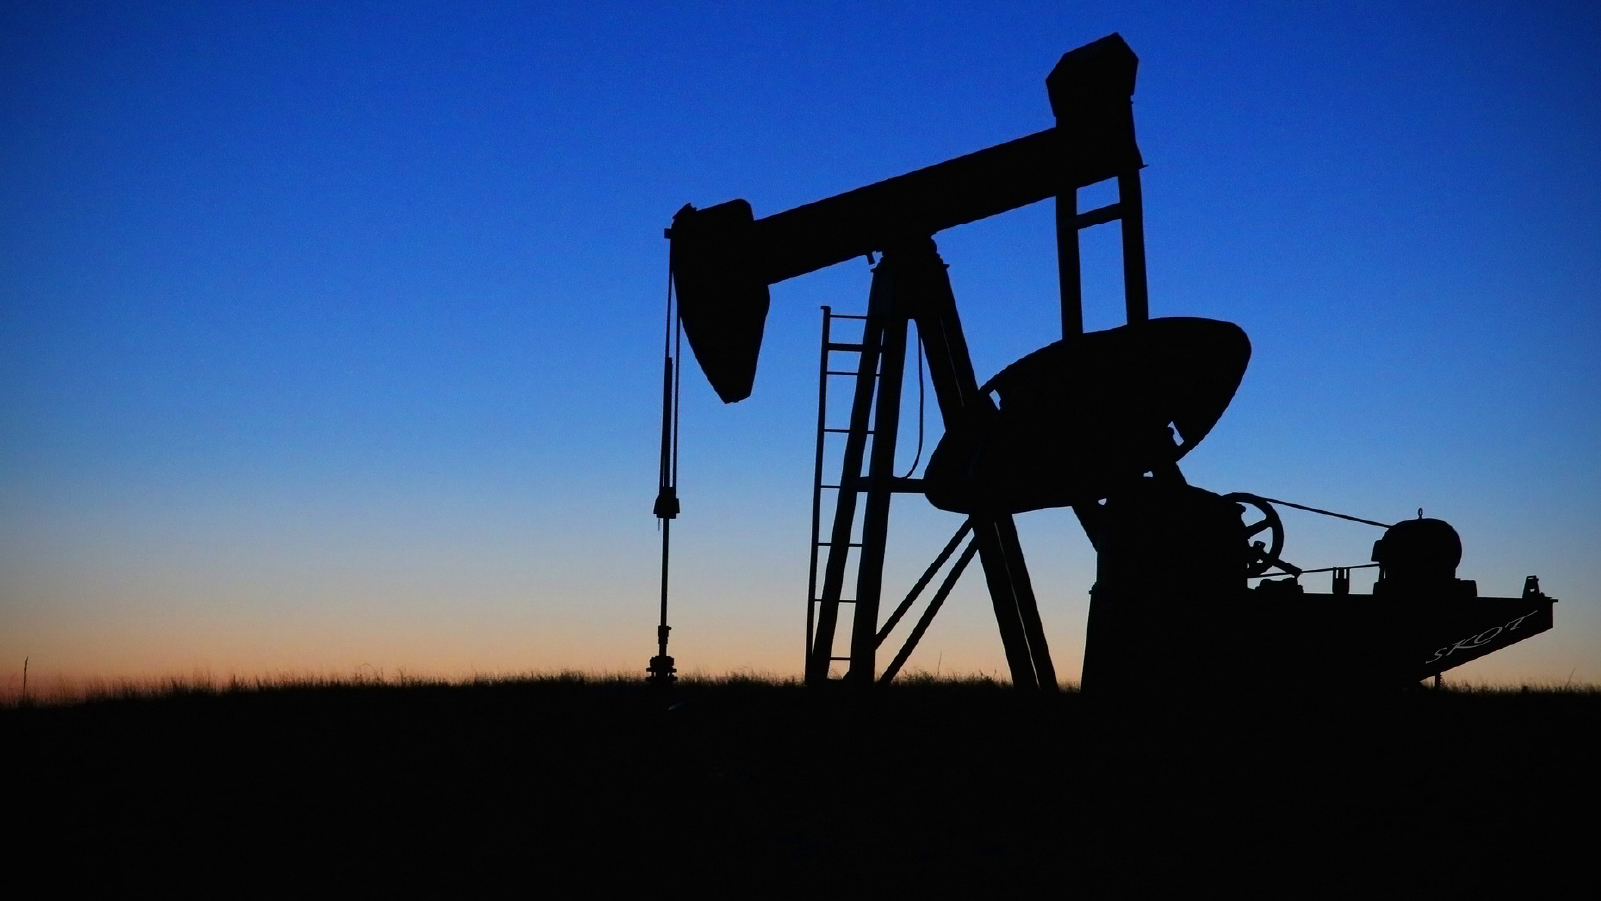 Webconf APCC – La fin du pétrole : objectif, chance ou risque sociétal ?